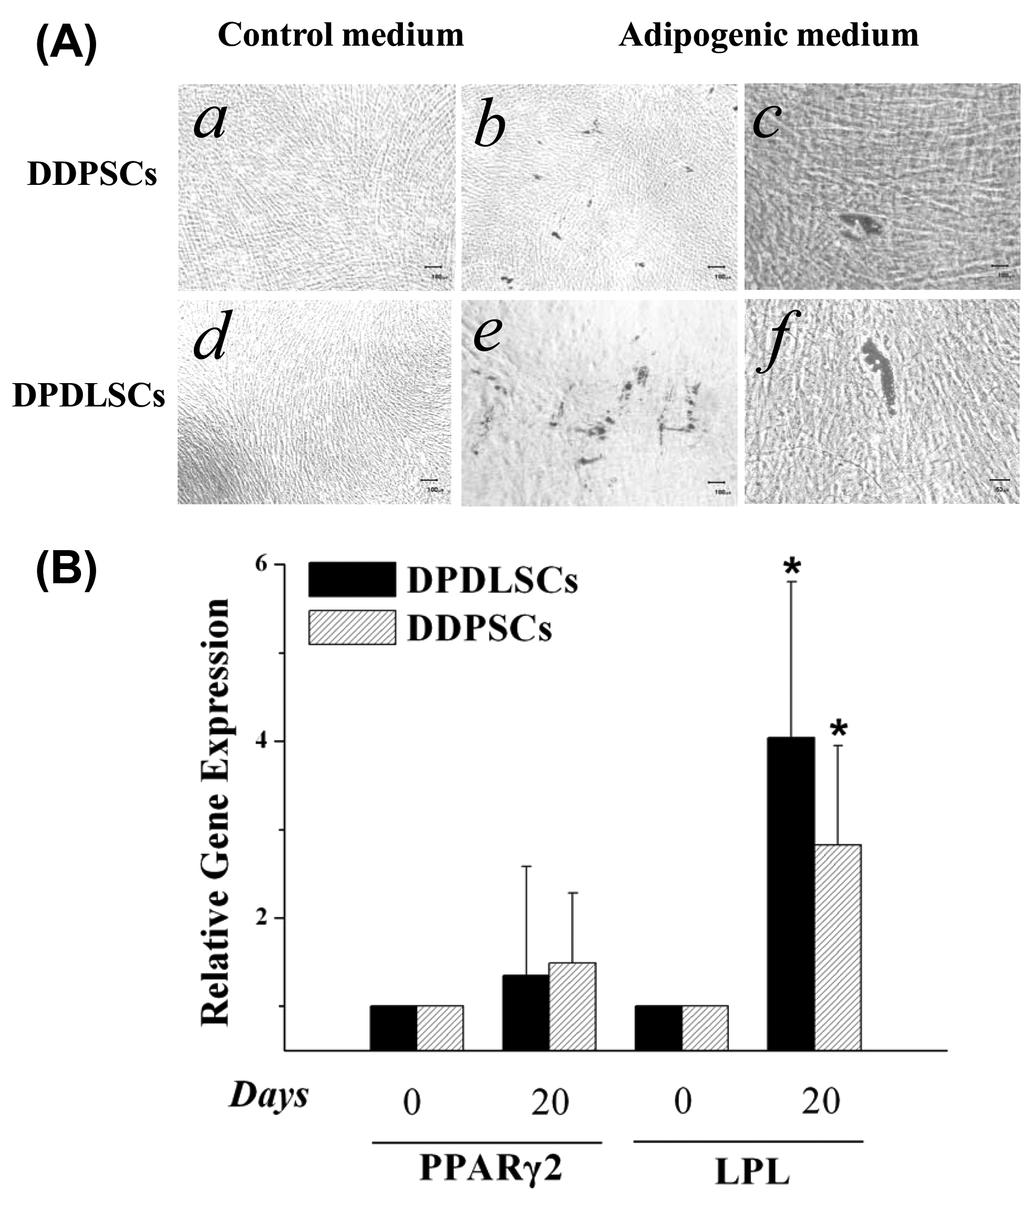 송제선 김승혜 김성오 최병재 김정희 곽성욱 정한성 Figure 5. Adipogenic differentiation of DDPSCs and DPDLSCs.